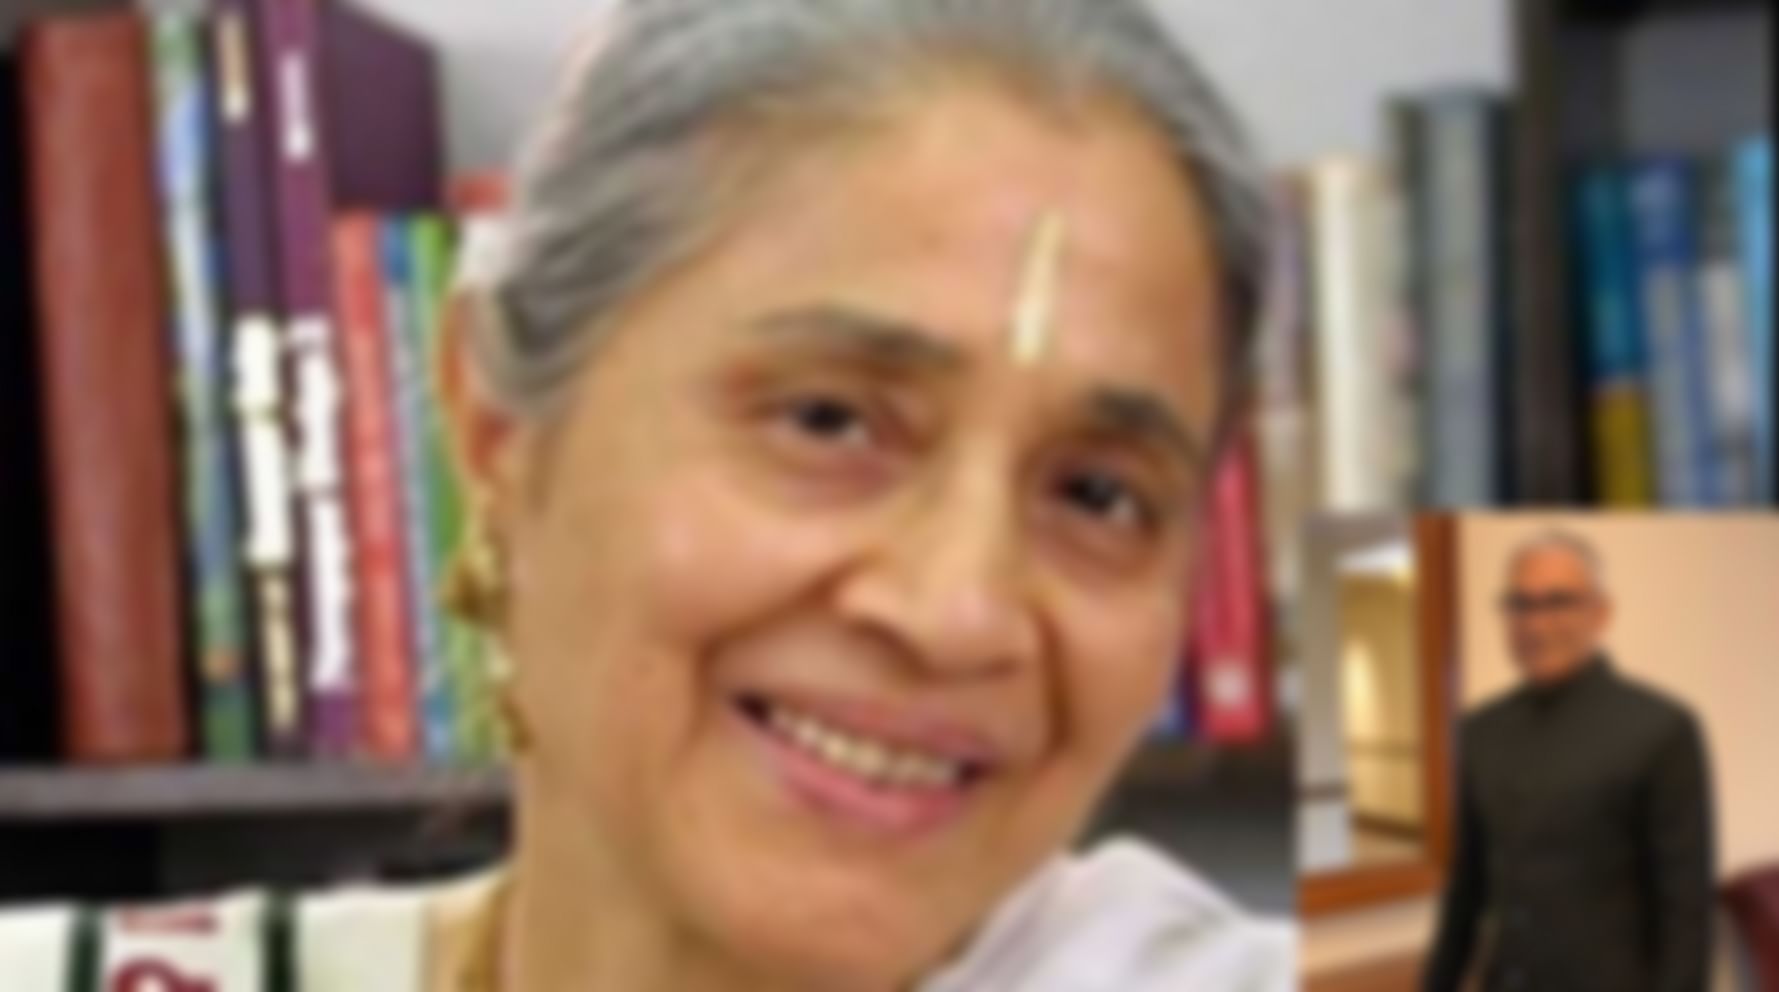 Indu Jain